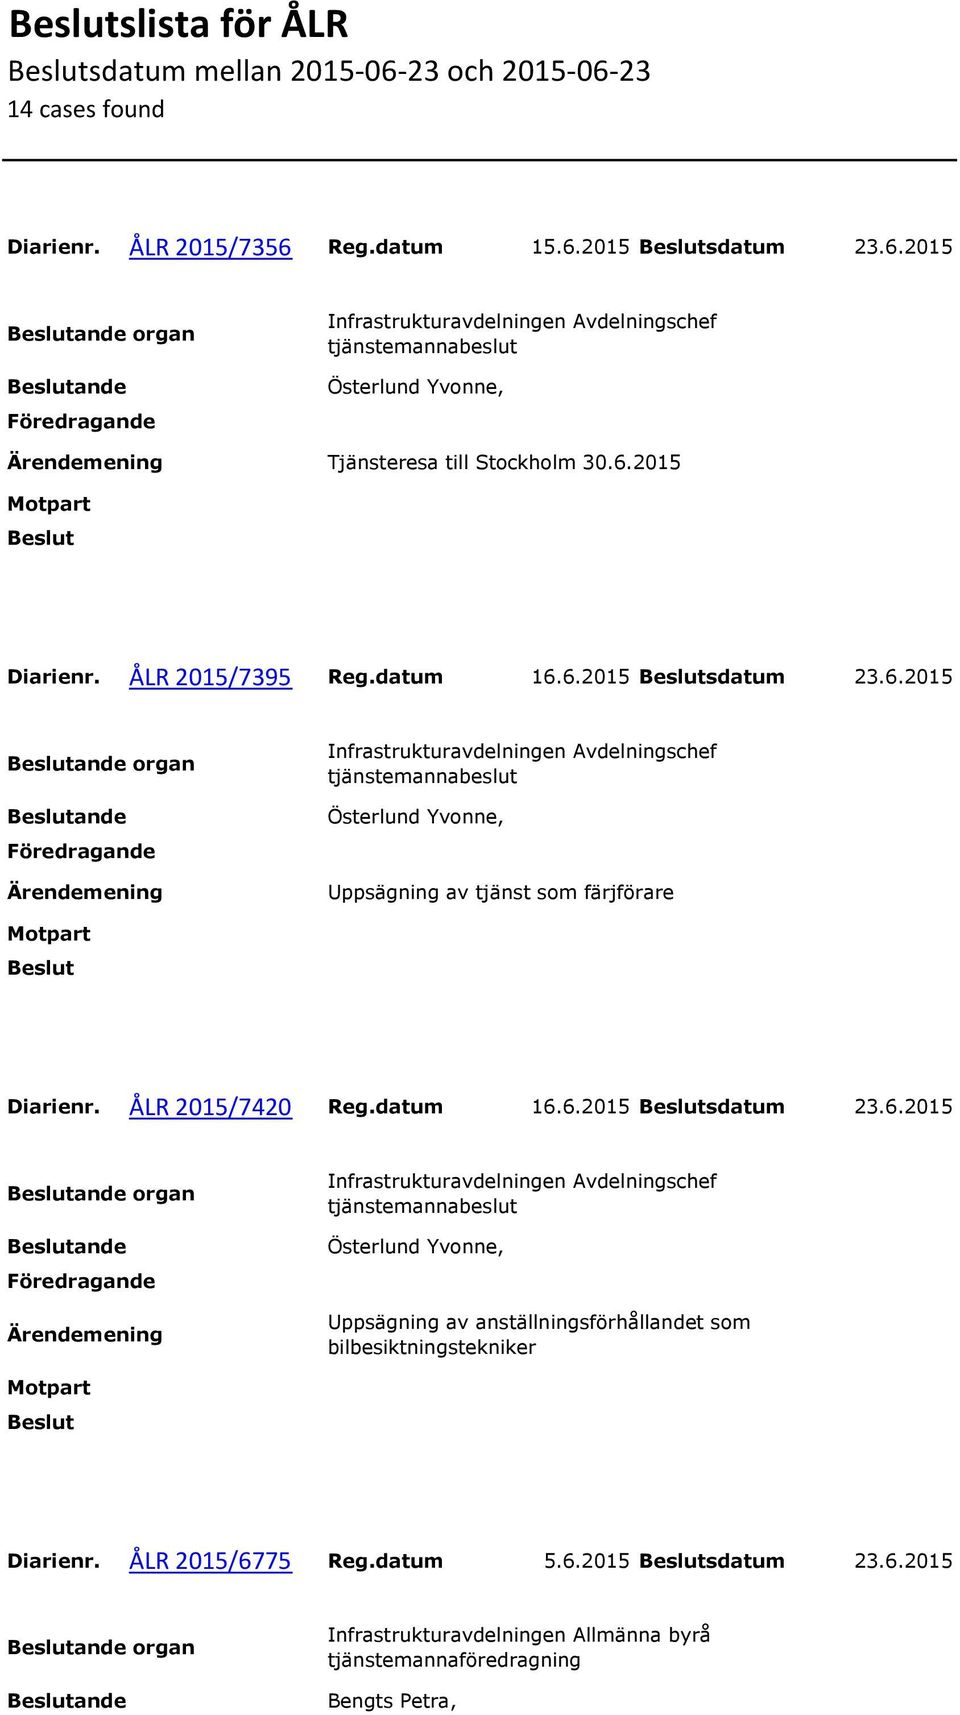 ÅLR 2015/7420 Reg.datum 16.6.2015 sdatum 23.6.2015 organ Uppsägning av anställningsförhållandet som bilbesiktningstekniker Diarienr.